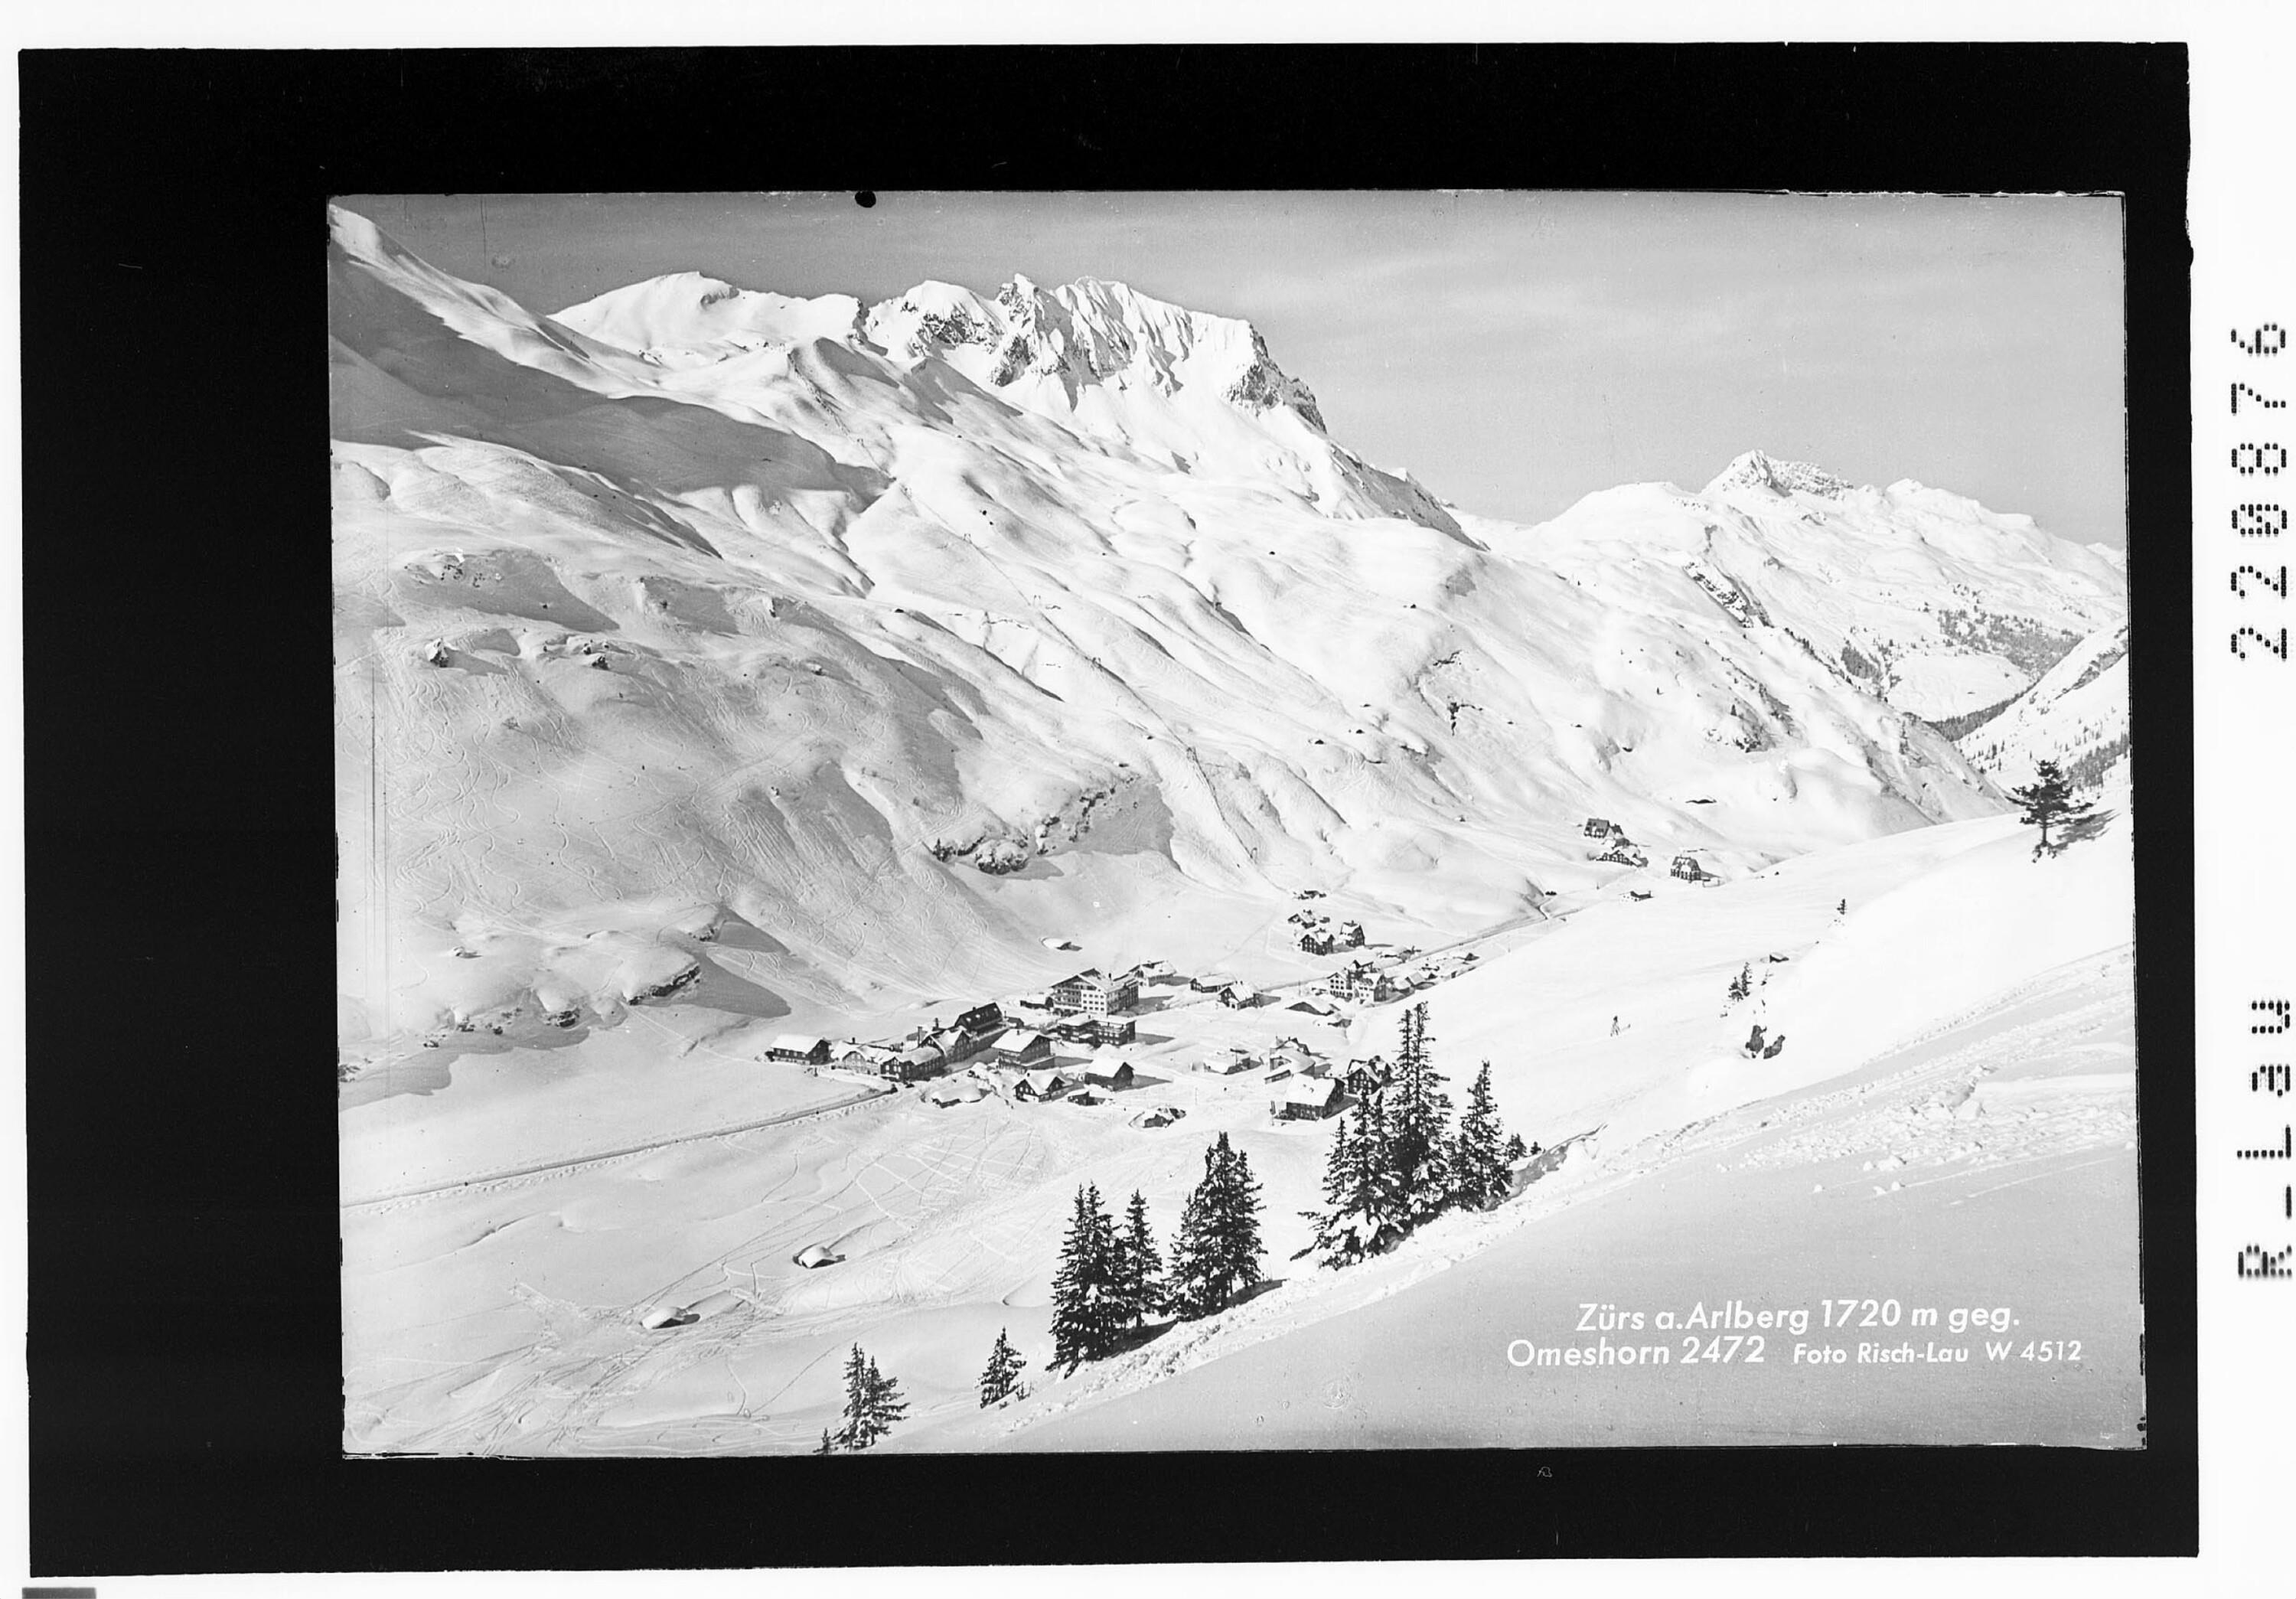 Zürs am Arlberg 1720 m gegen Omeshorn 2472 m></div>


    <hr>
    <div class=